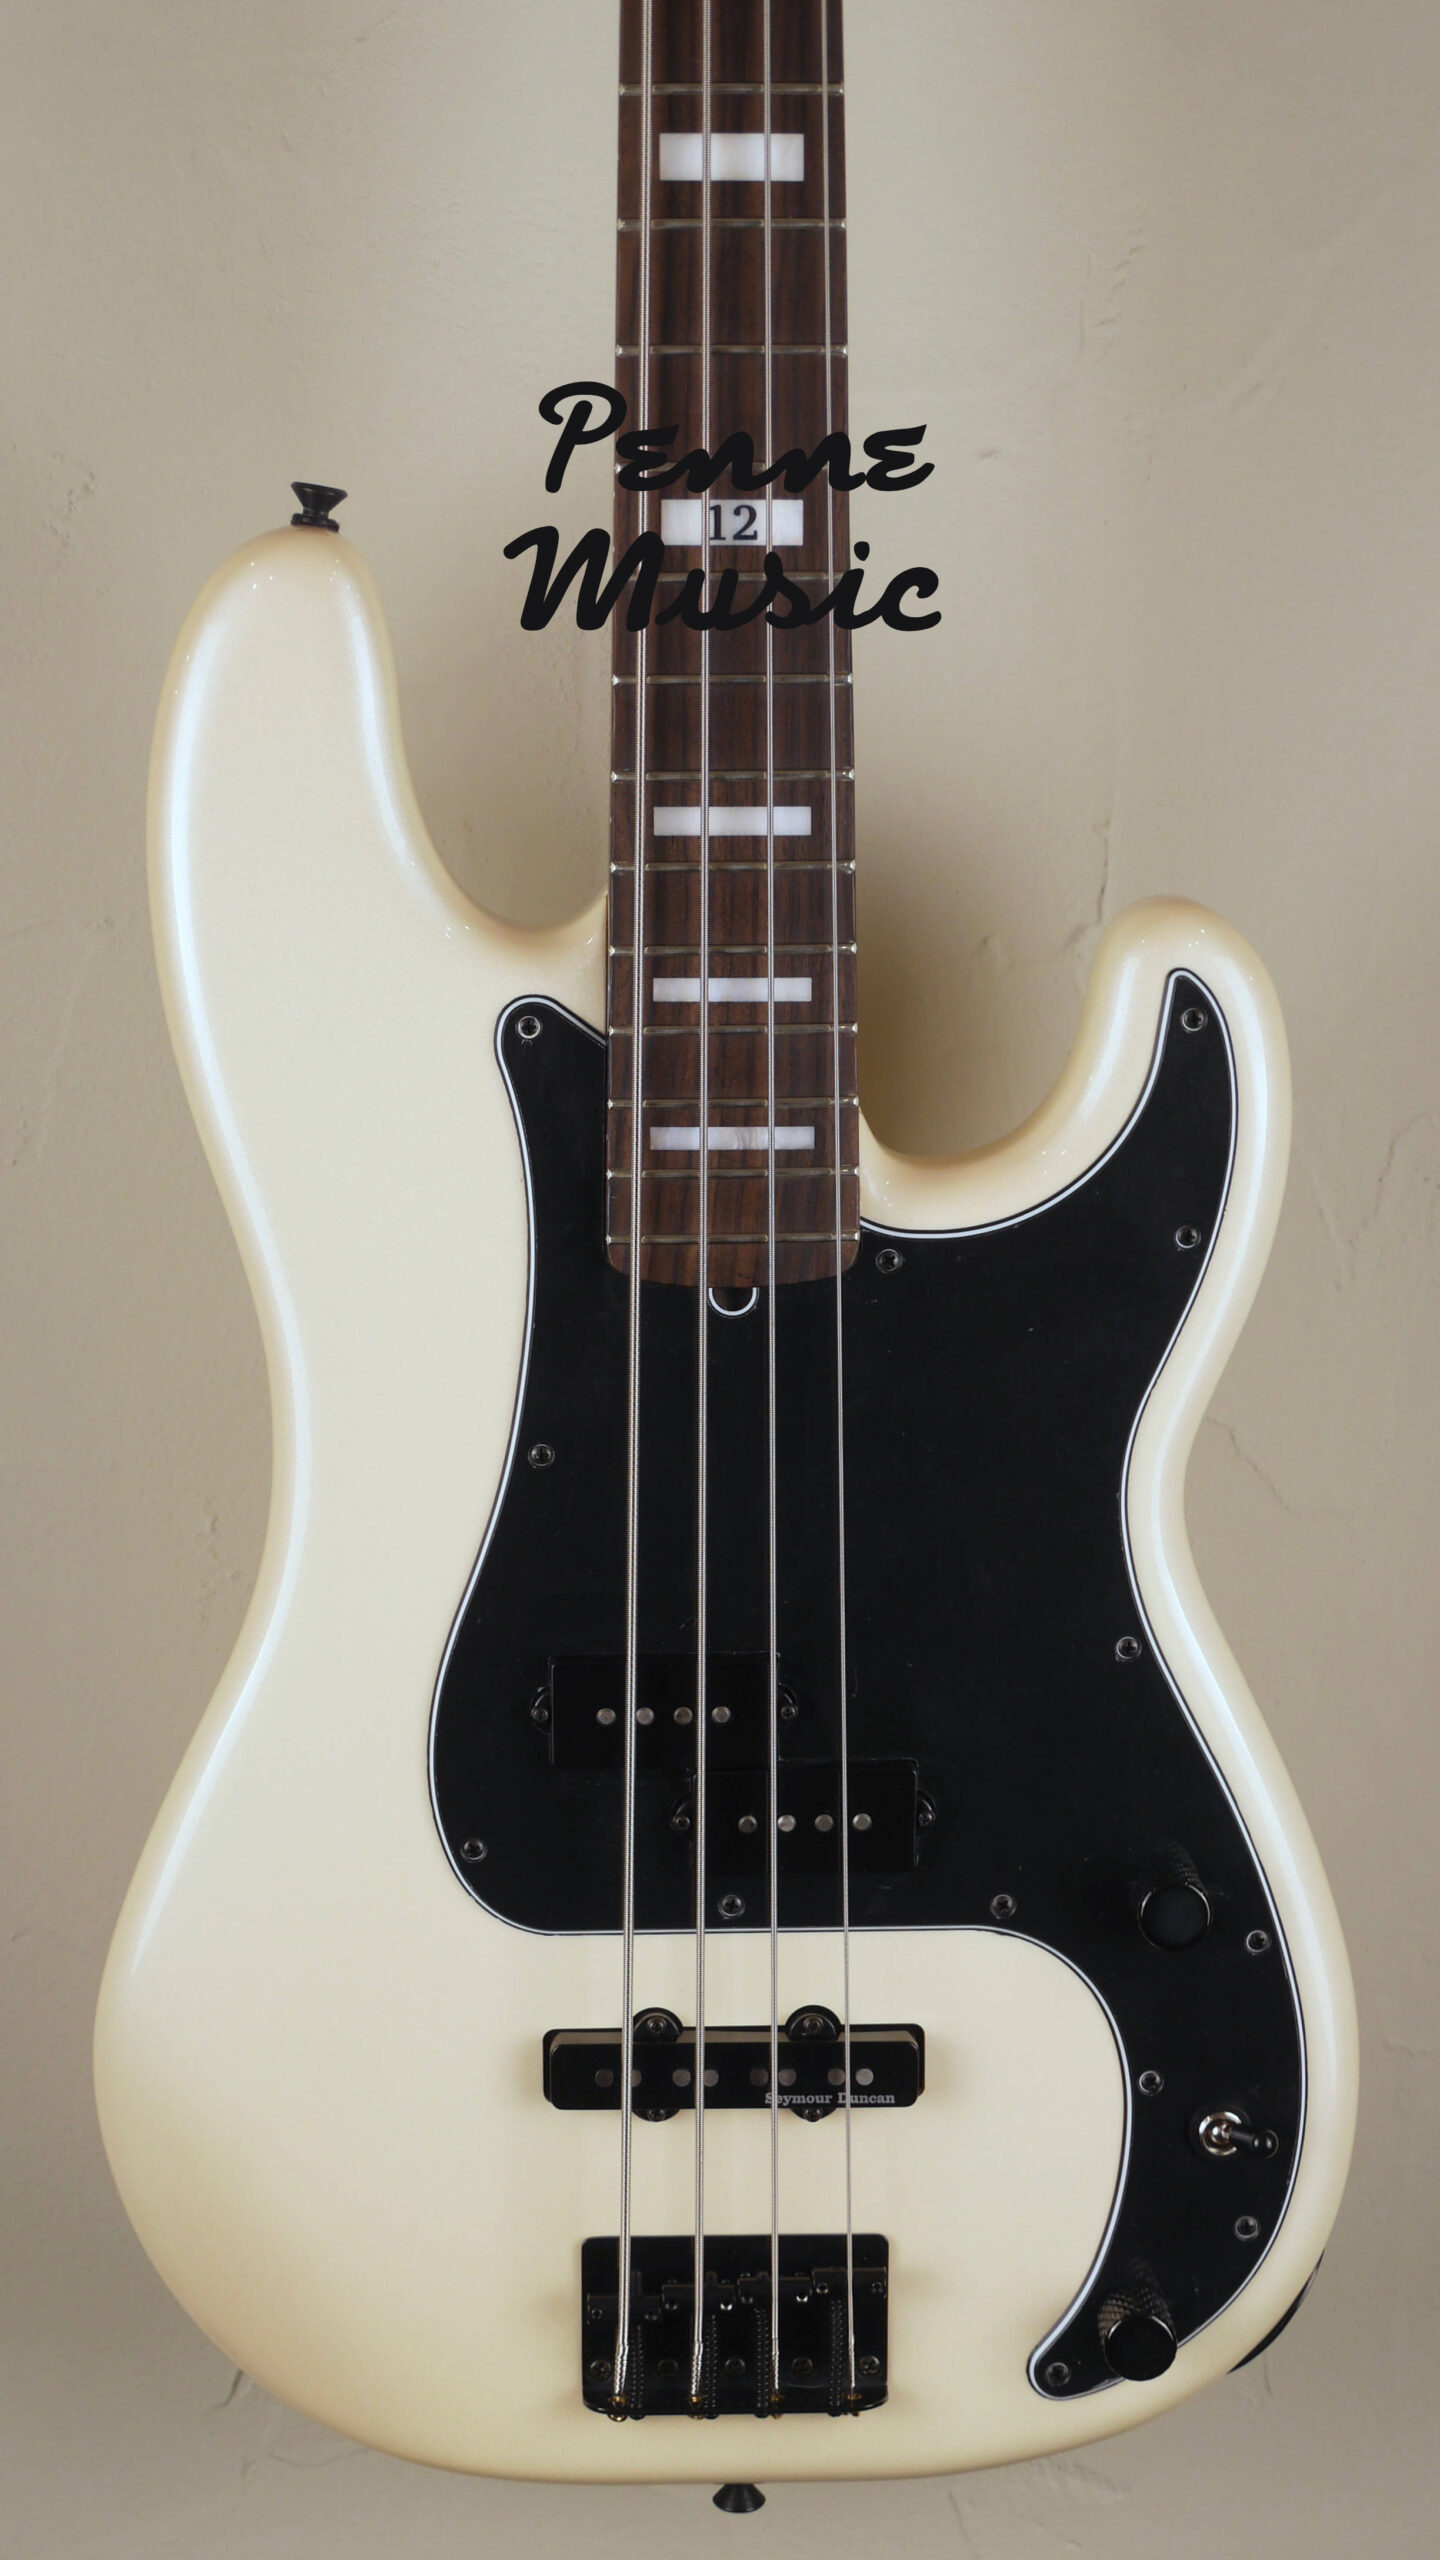 Fender Duff McKagan Deluxe Precision Bass White Pearl 3